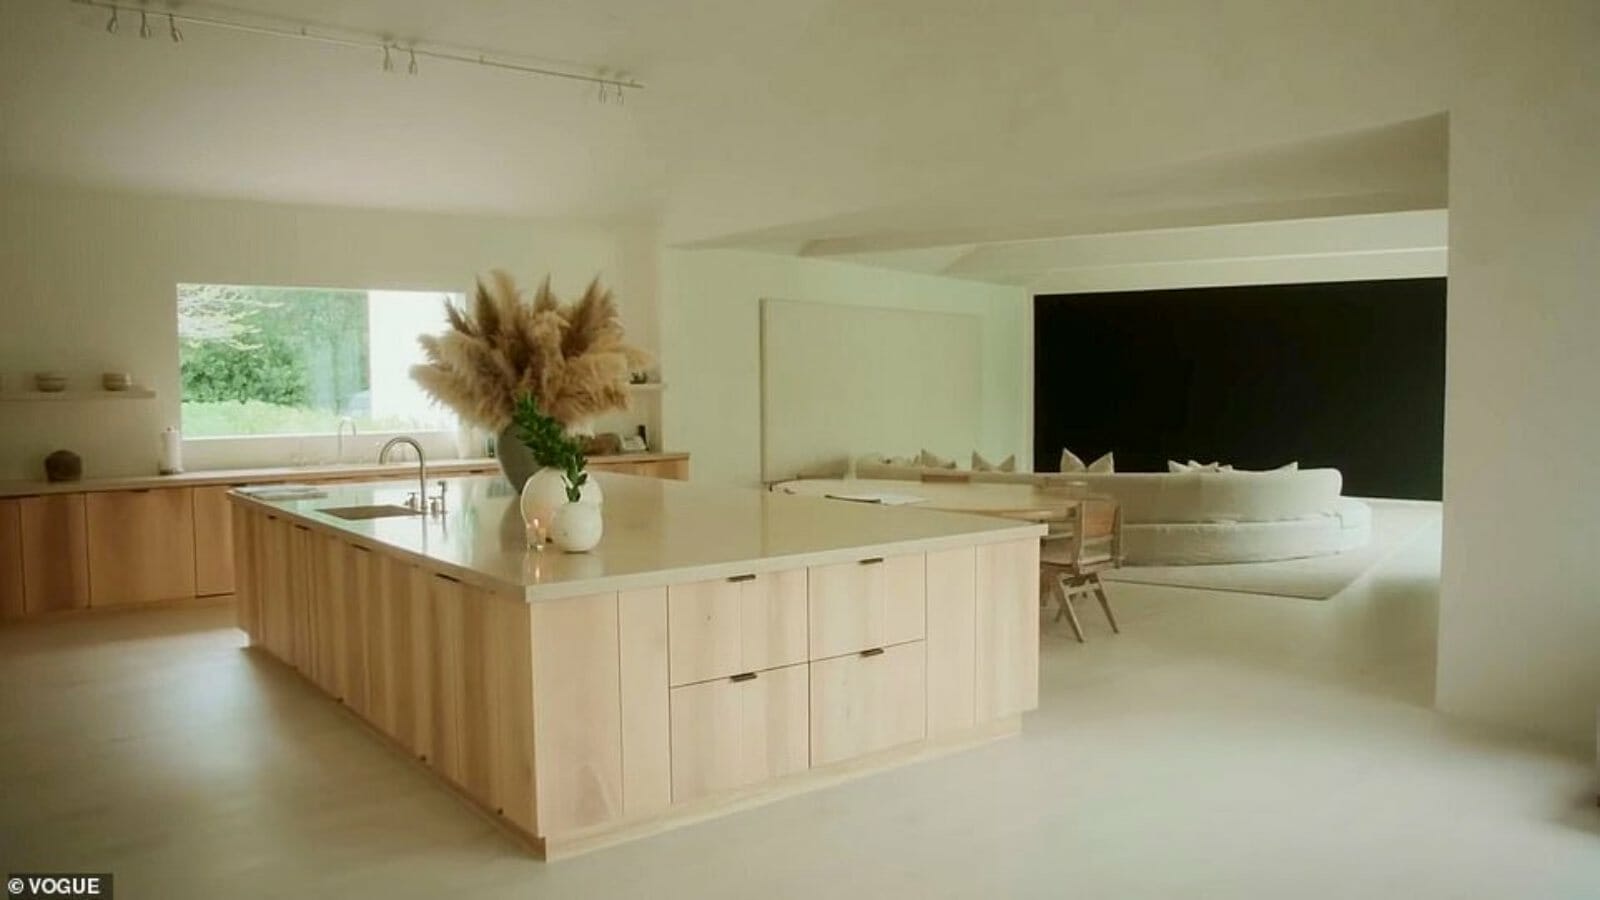 Kim Kardashian's kitchen as seen in the house tour.